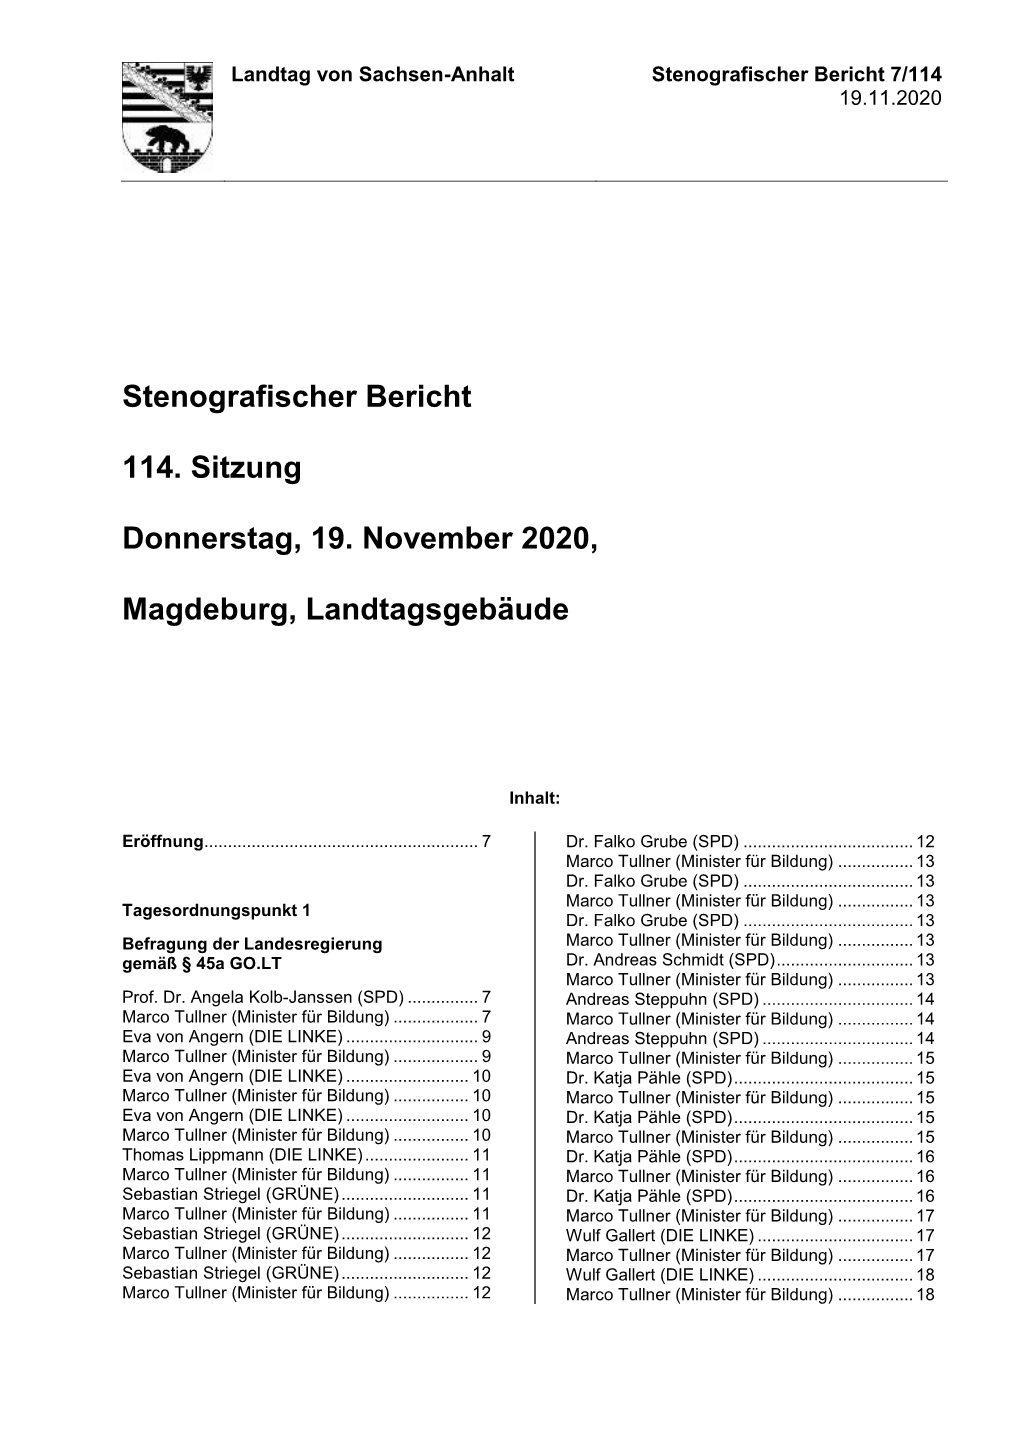 Stenografischer Bericht Über Die 114. Sitzung Am 19.11.2020